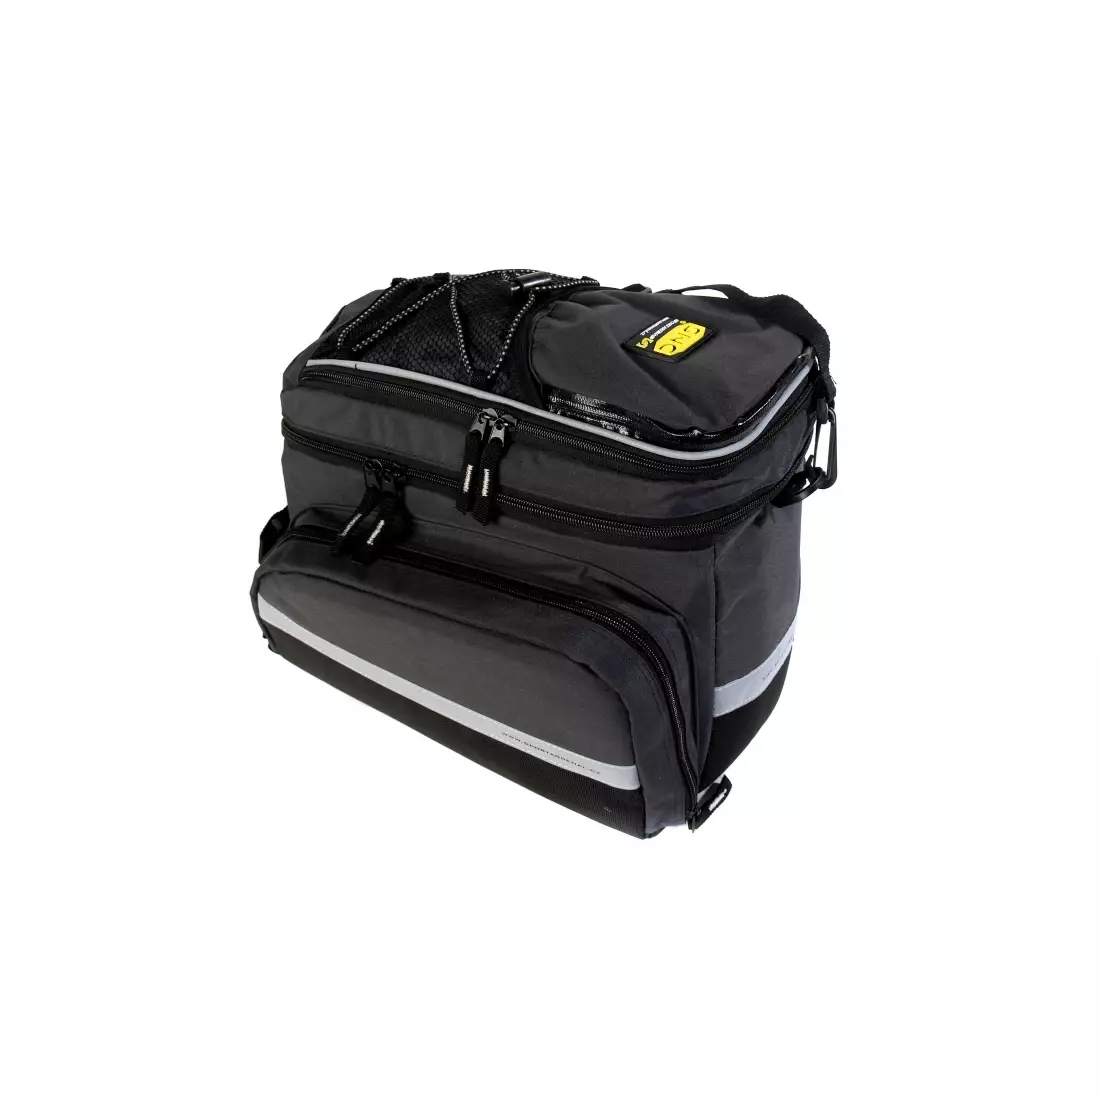 SPORT ARSENAL SNC 550 Multifunktionstasche für den Kofferraum